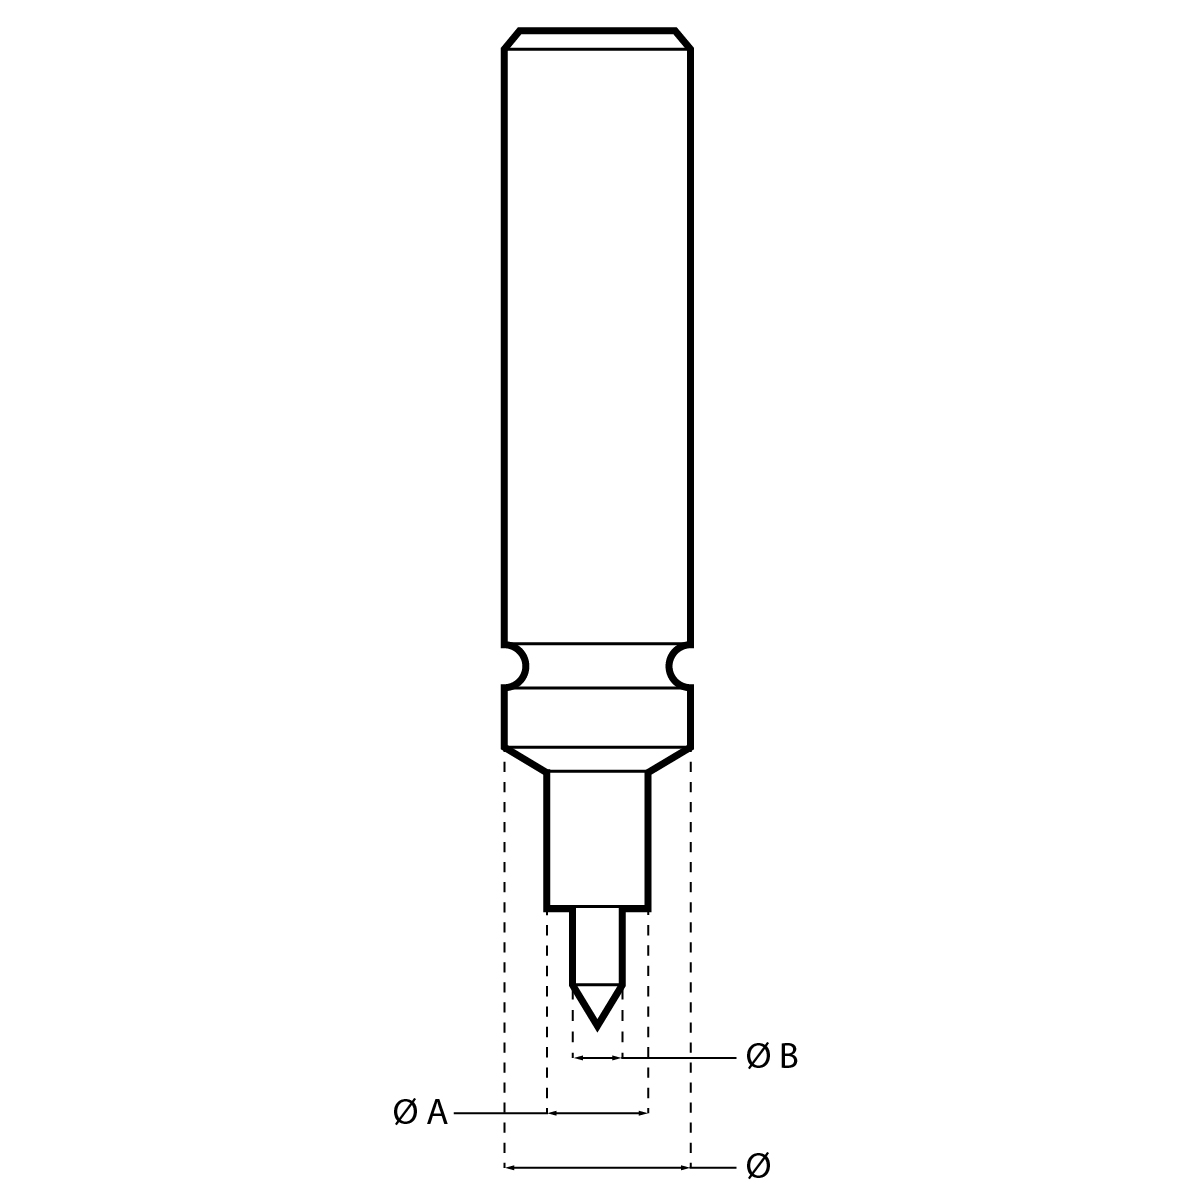 Poussoir à pompe HORIA N°spécial-3 Ø  appui 0.70 mm / Ø  pompe 0.40 mm